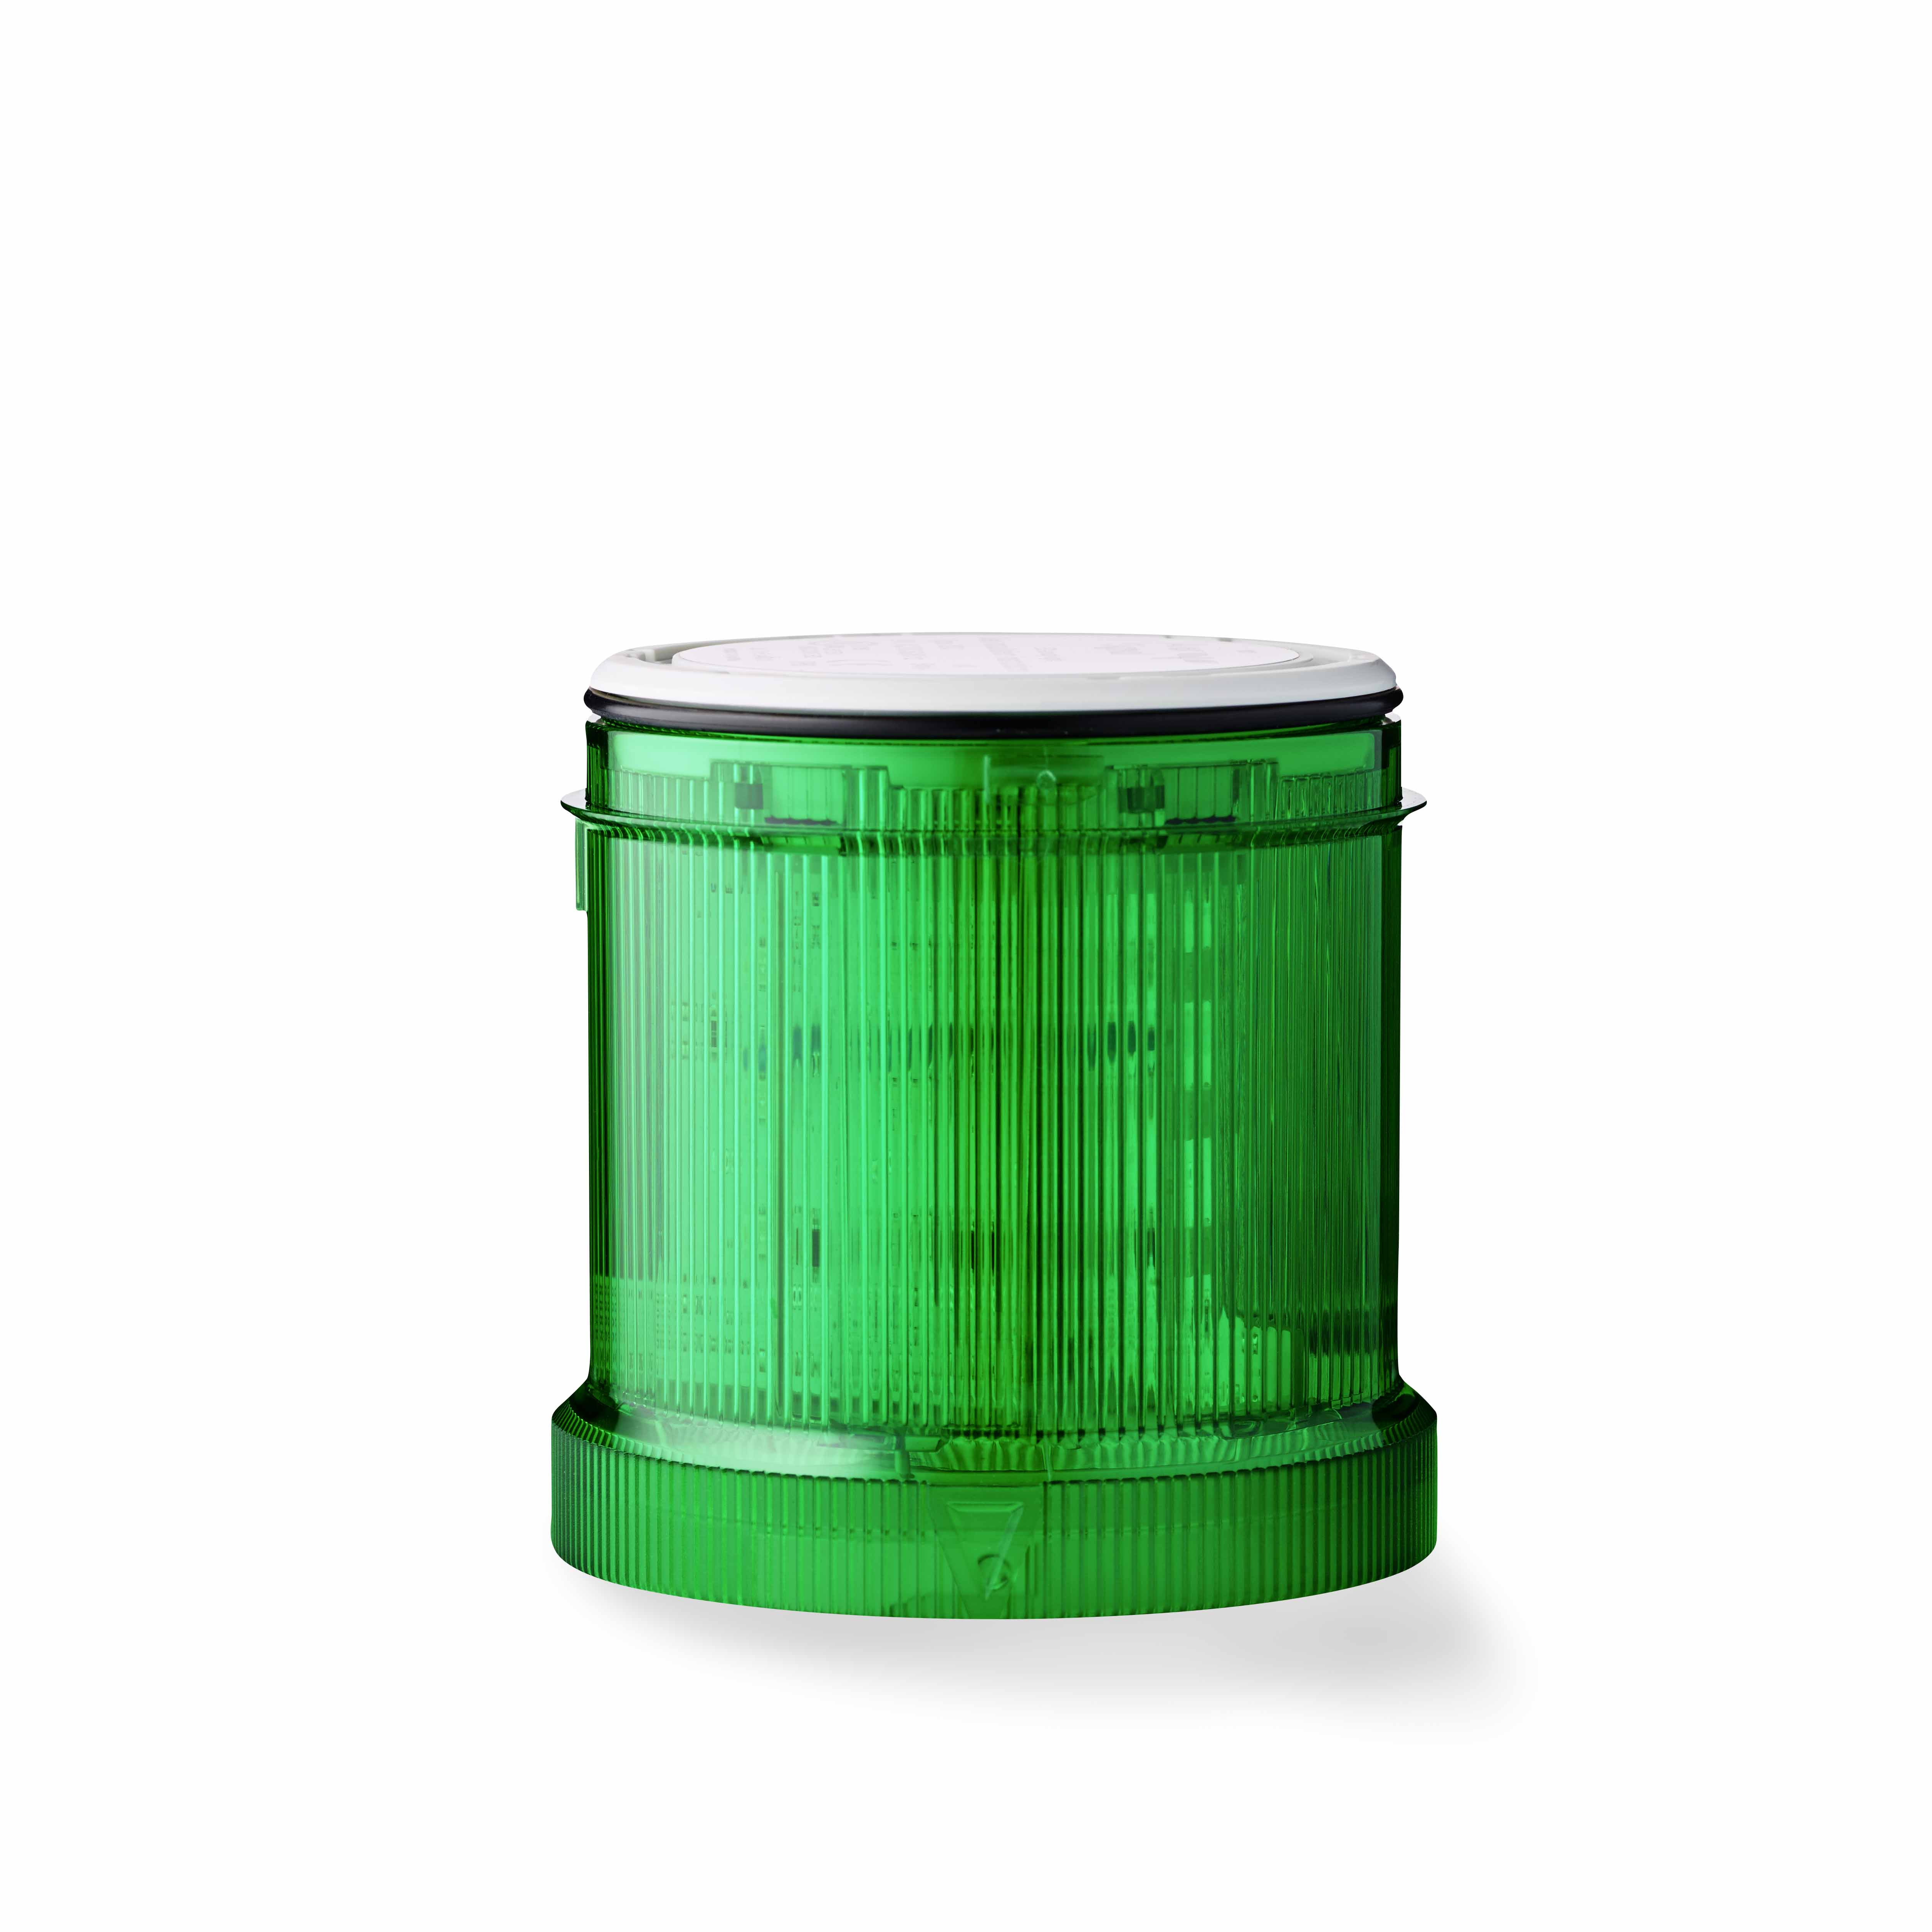 LED Blinkleuchten-Modul, 24V AC/DC, grün